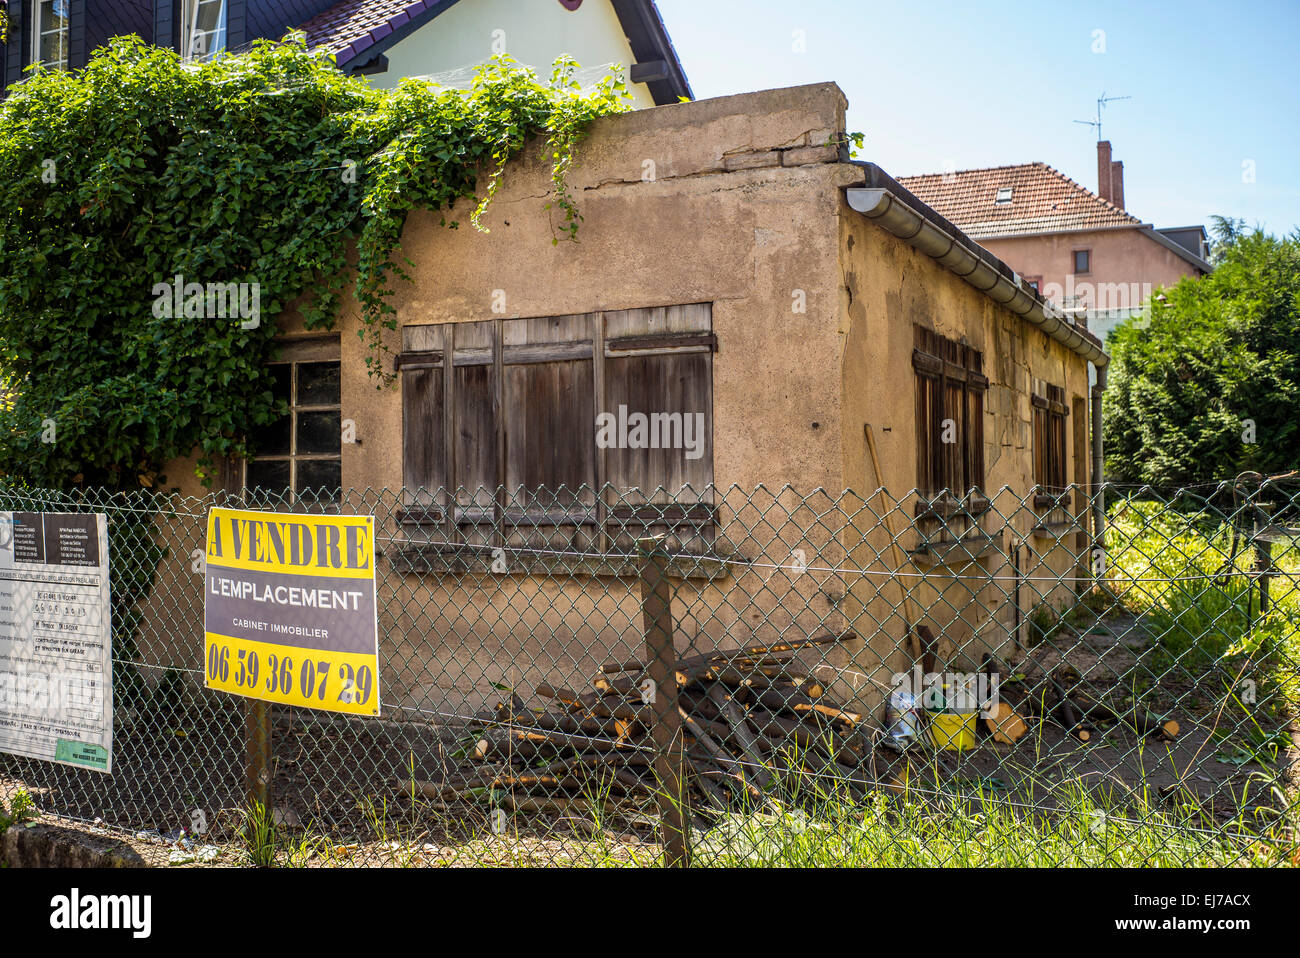 Verlassene kleine Gebäude zum Verkauf, A Vendre Zeichen, Straßburg, Elsass, Frankreich, Europa Stockfoto